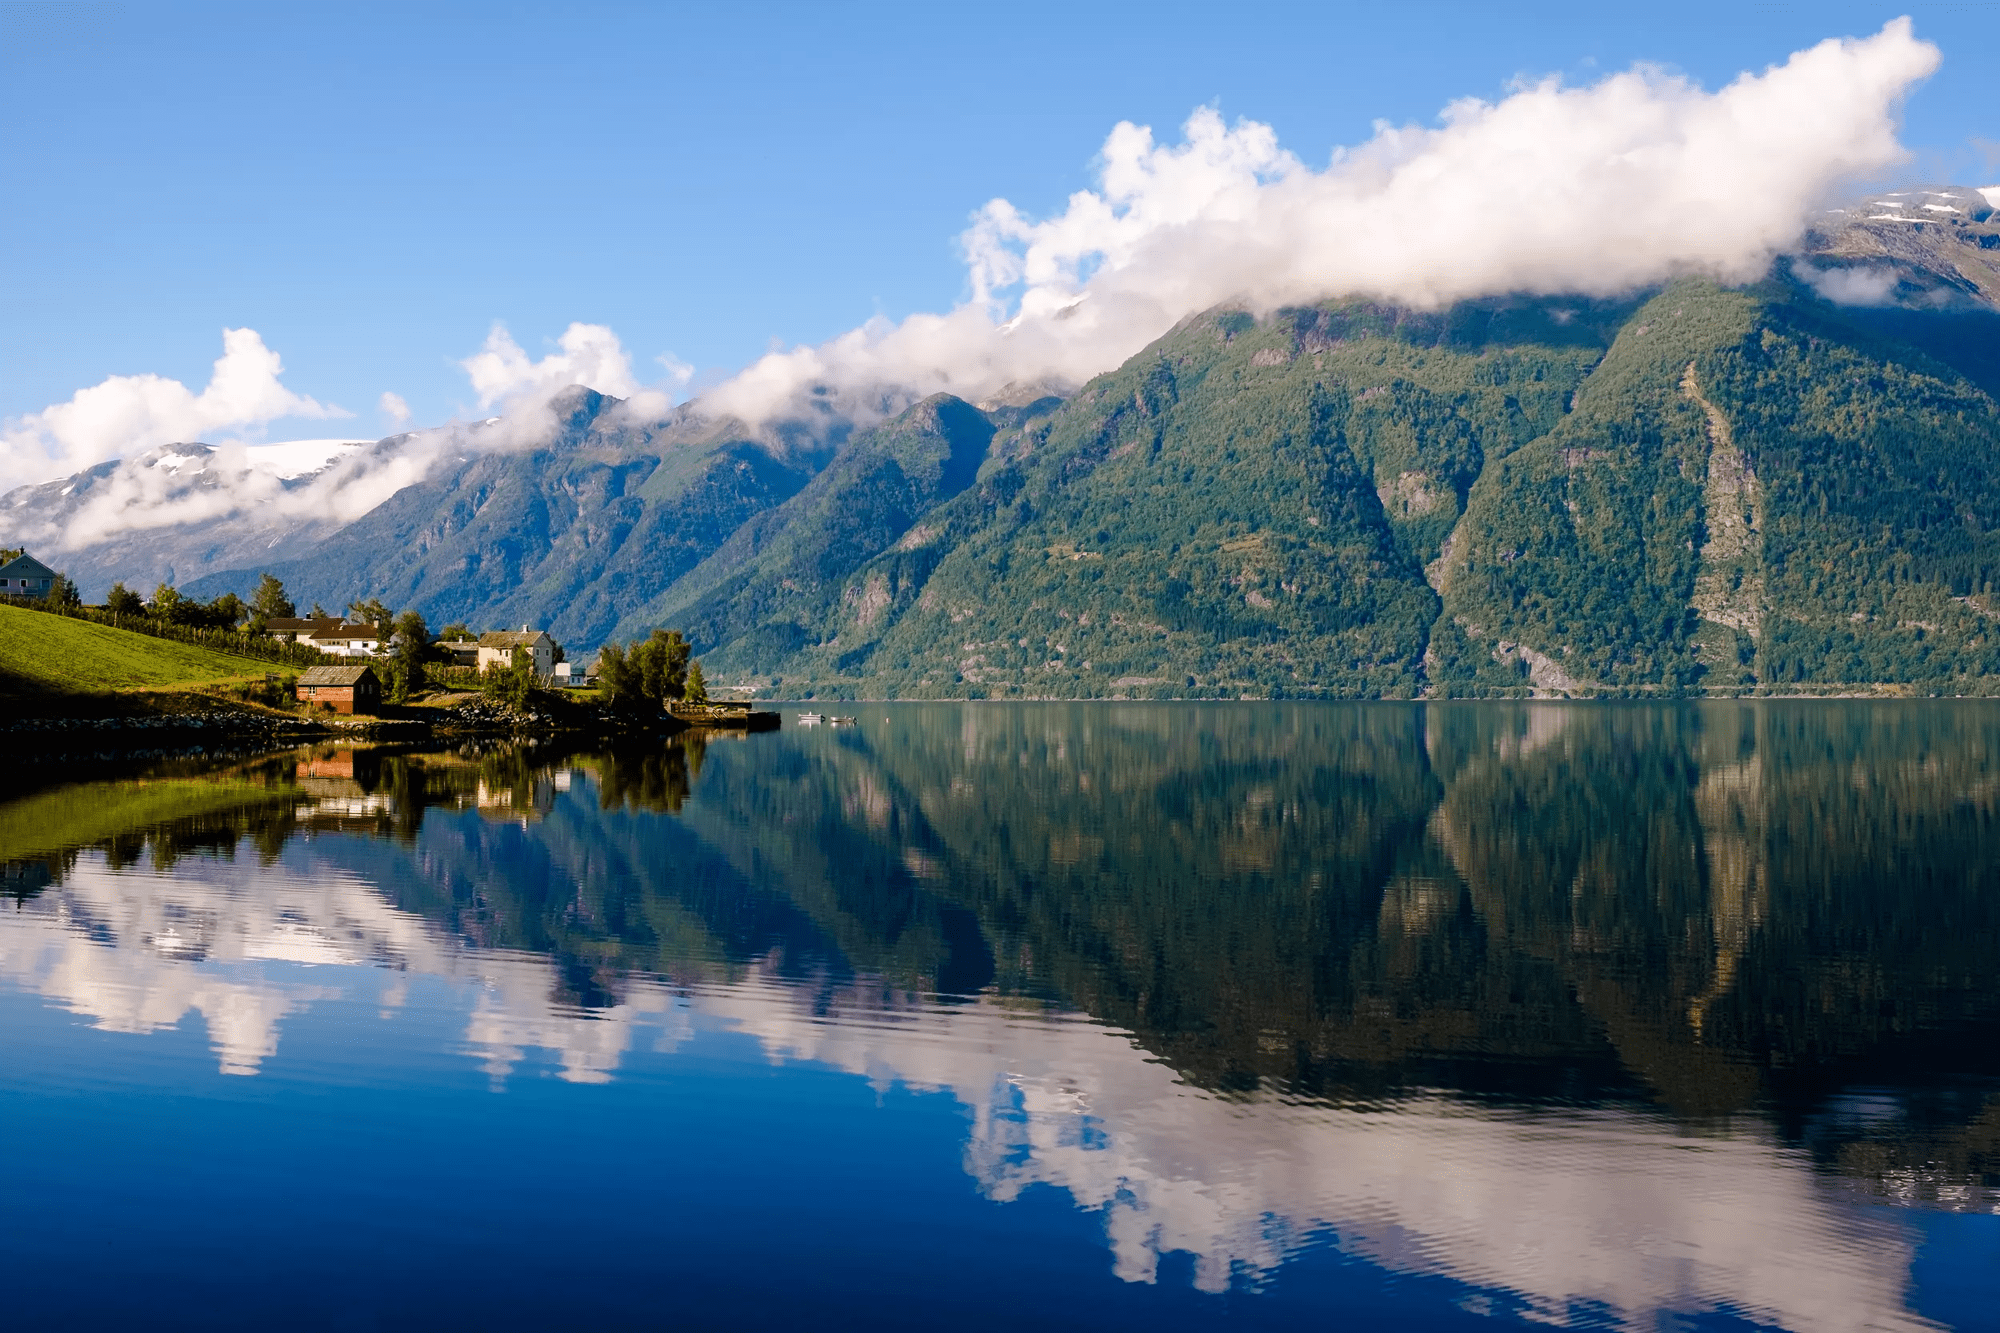 Rondreis 12-daagse rondreis Noorwegen - Het mooiste uitzicht ter wereld in Voss (Diversen, Noorwegen)